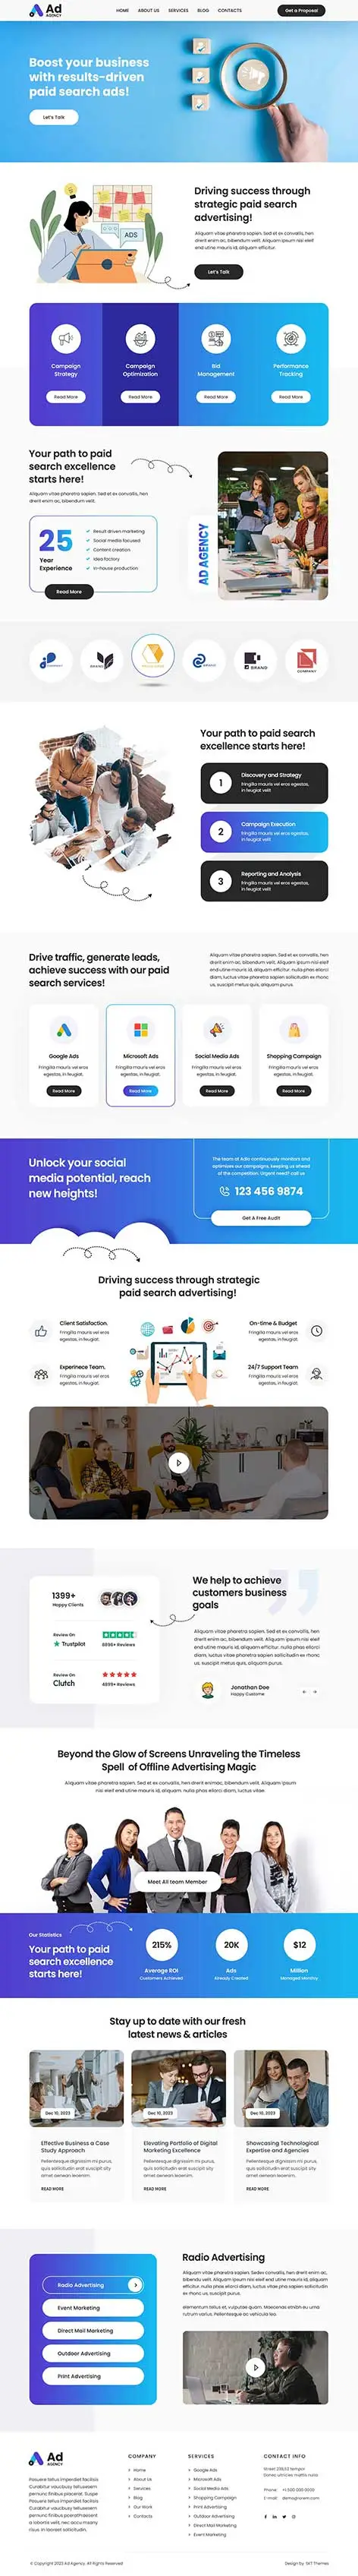 SKT Ad Agency - Digital AD Agency WordPress Theme